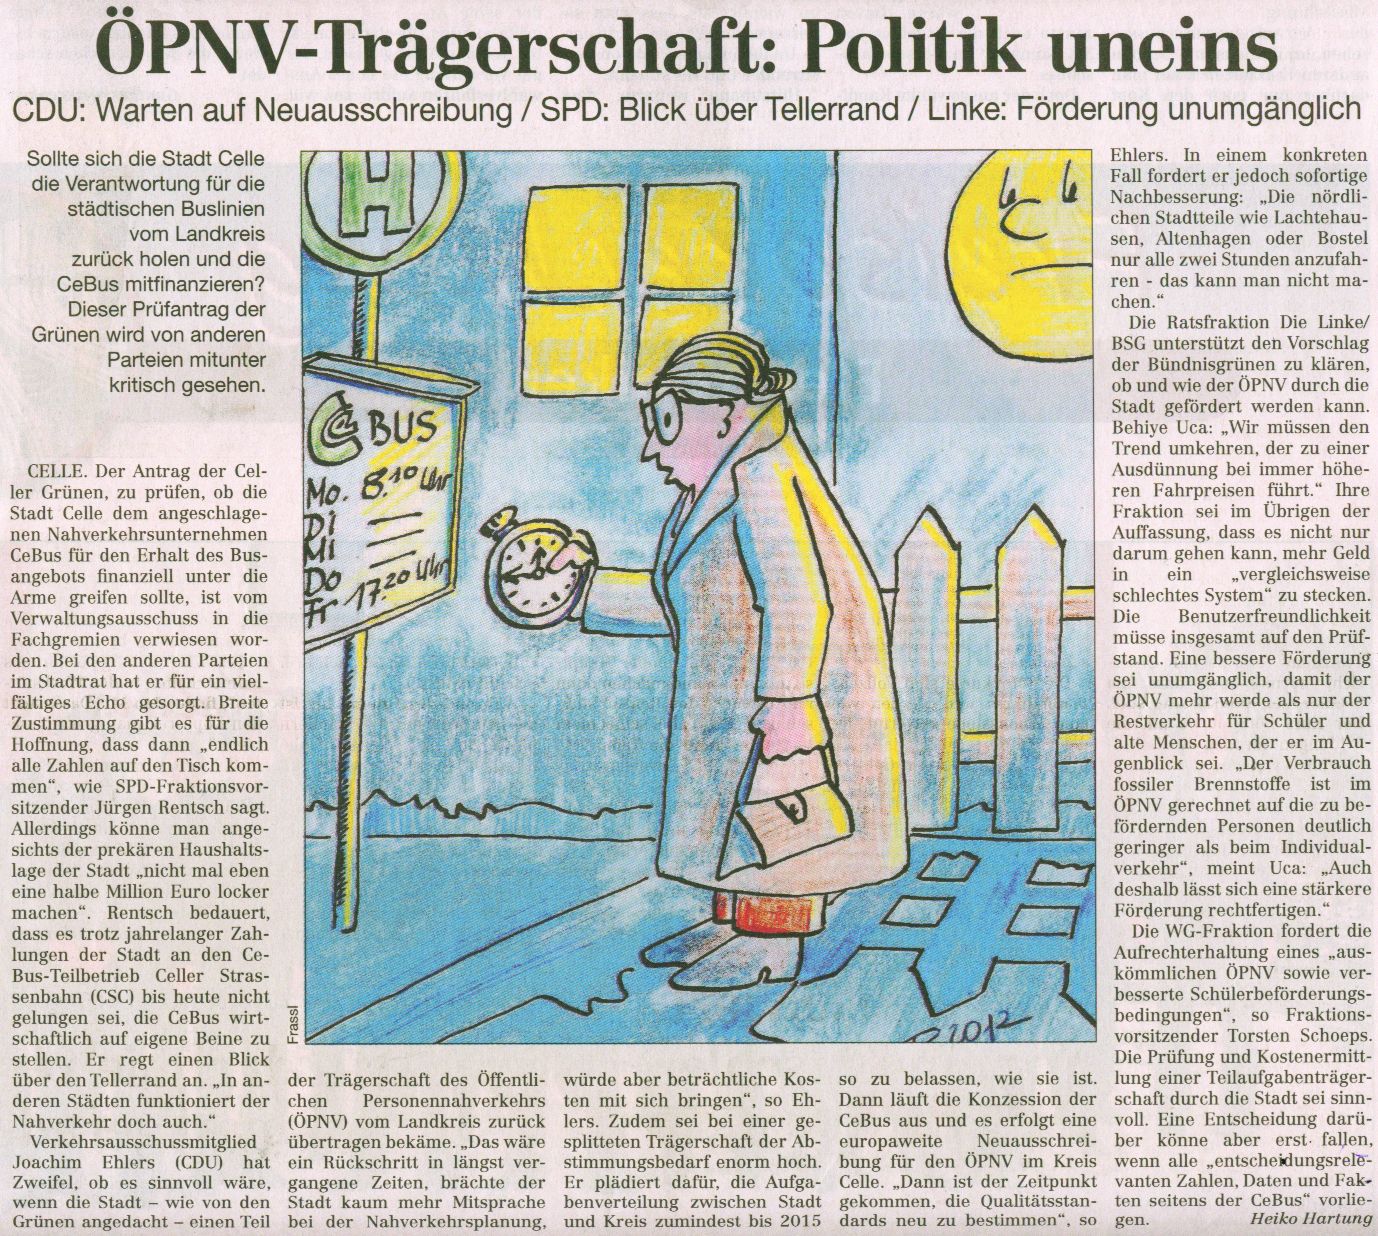 4-OPNV-Tragerschaft-Politik-uneins-CZ-10.2.2012.jpg